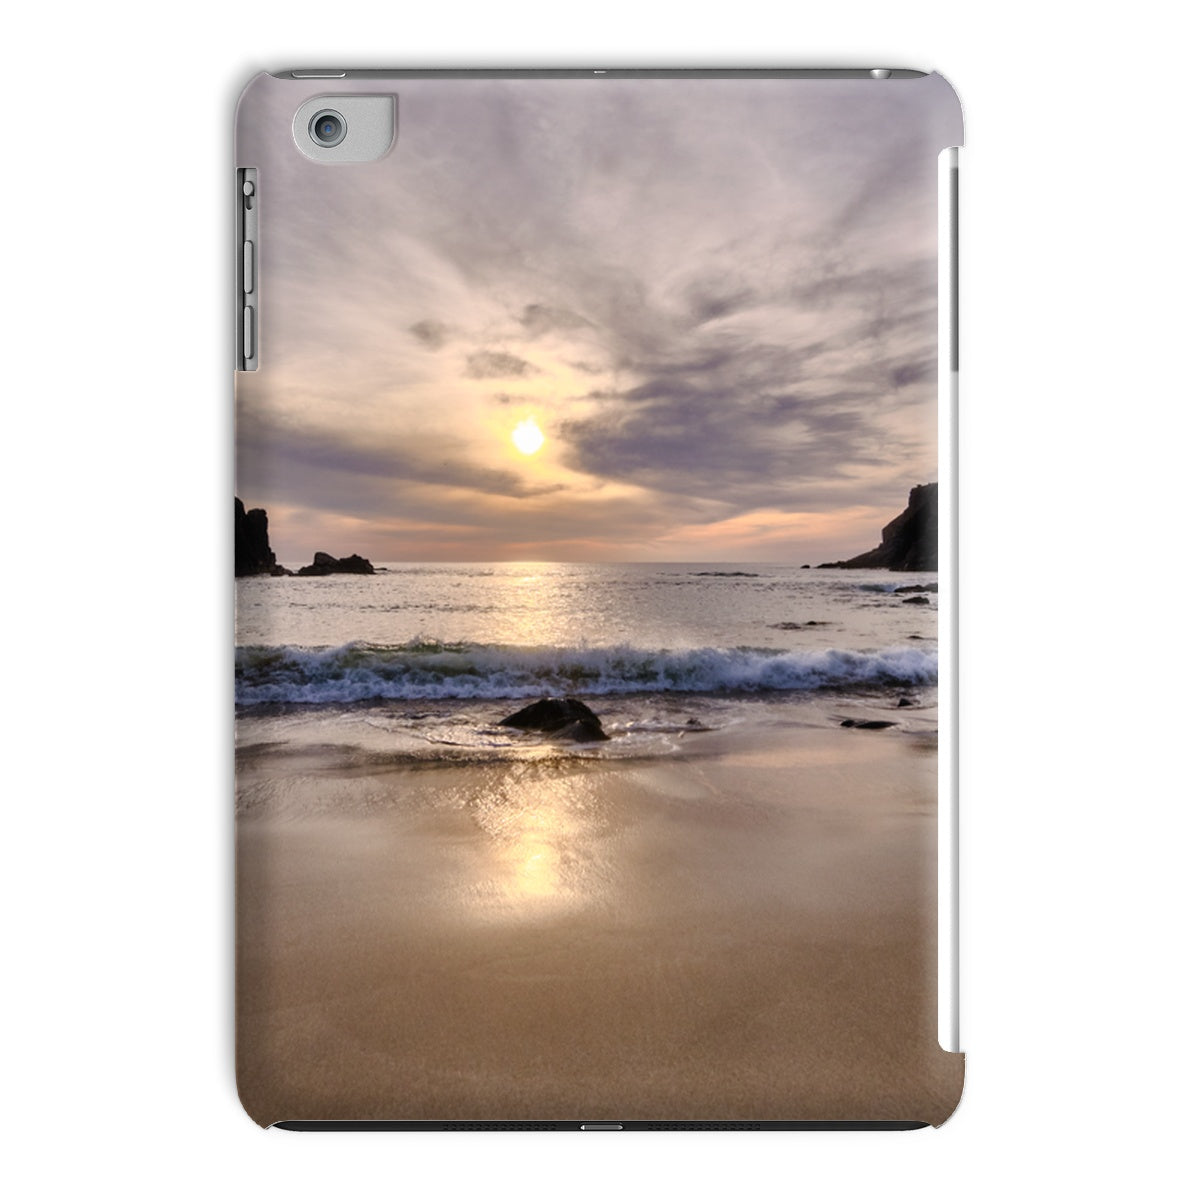 Dalbeg Beach Sunset Tablet Cases